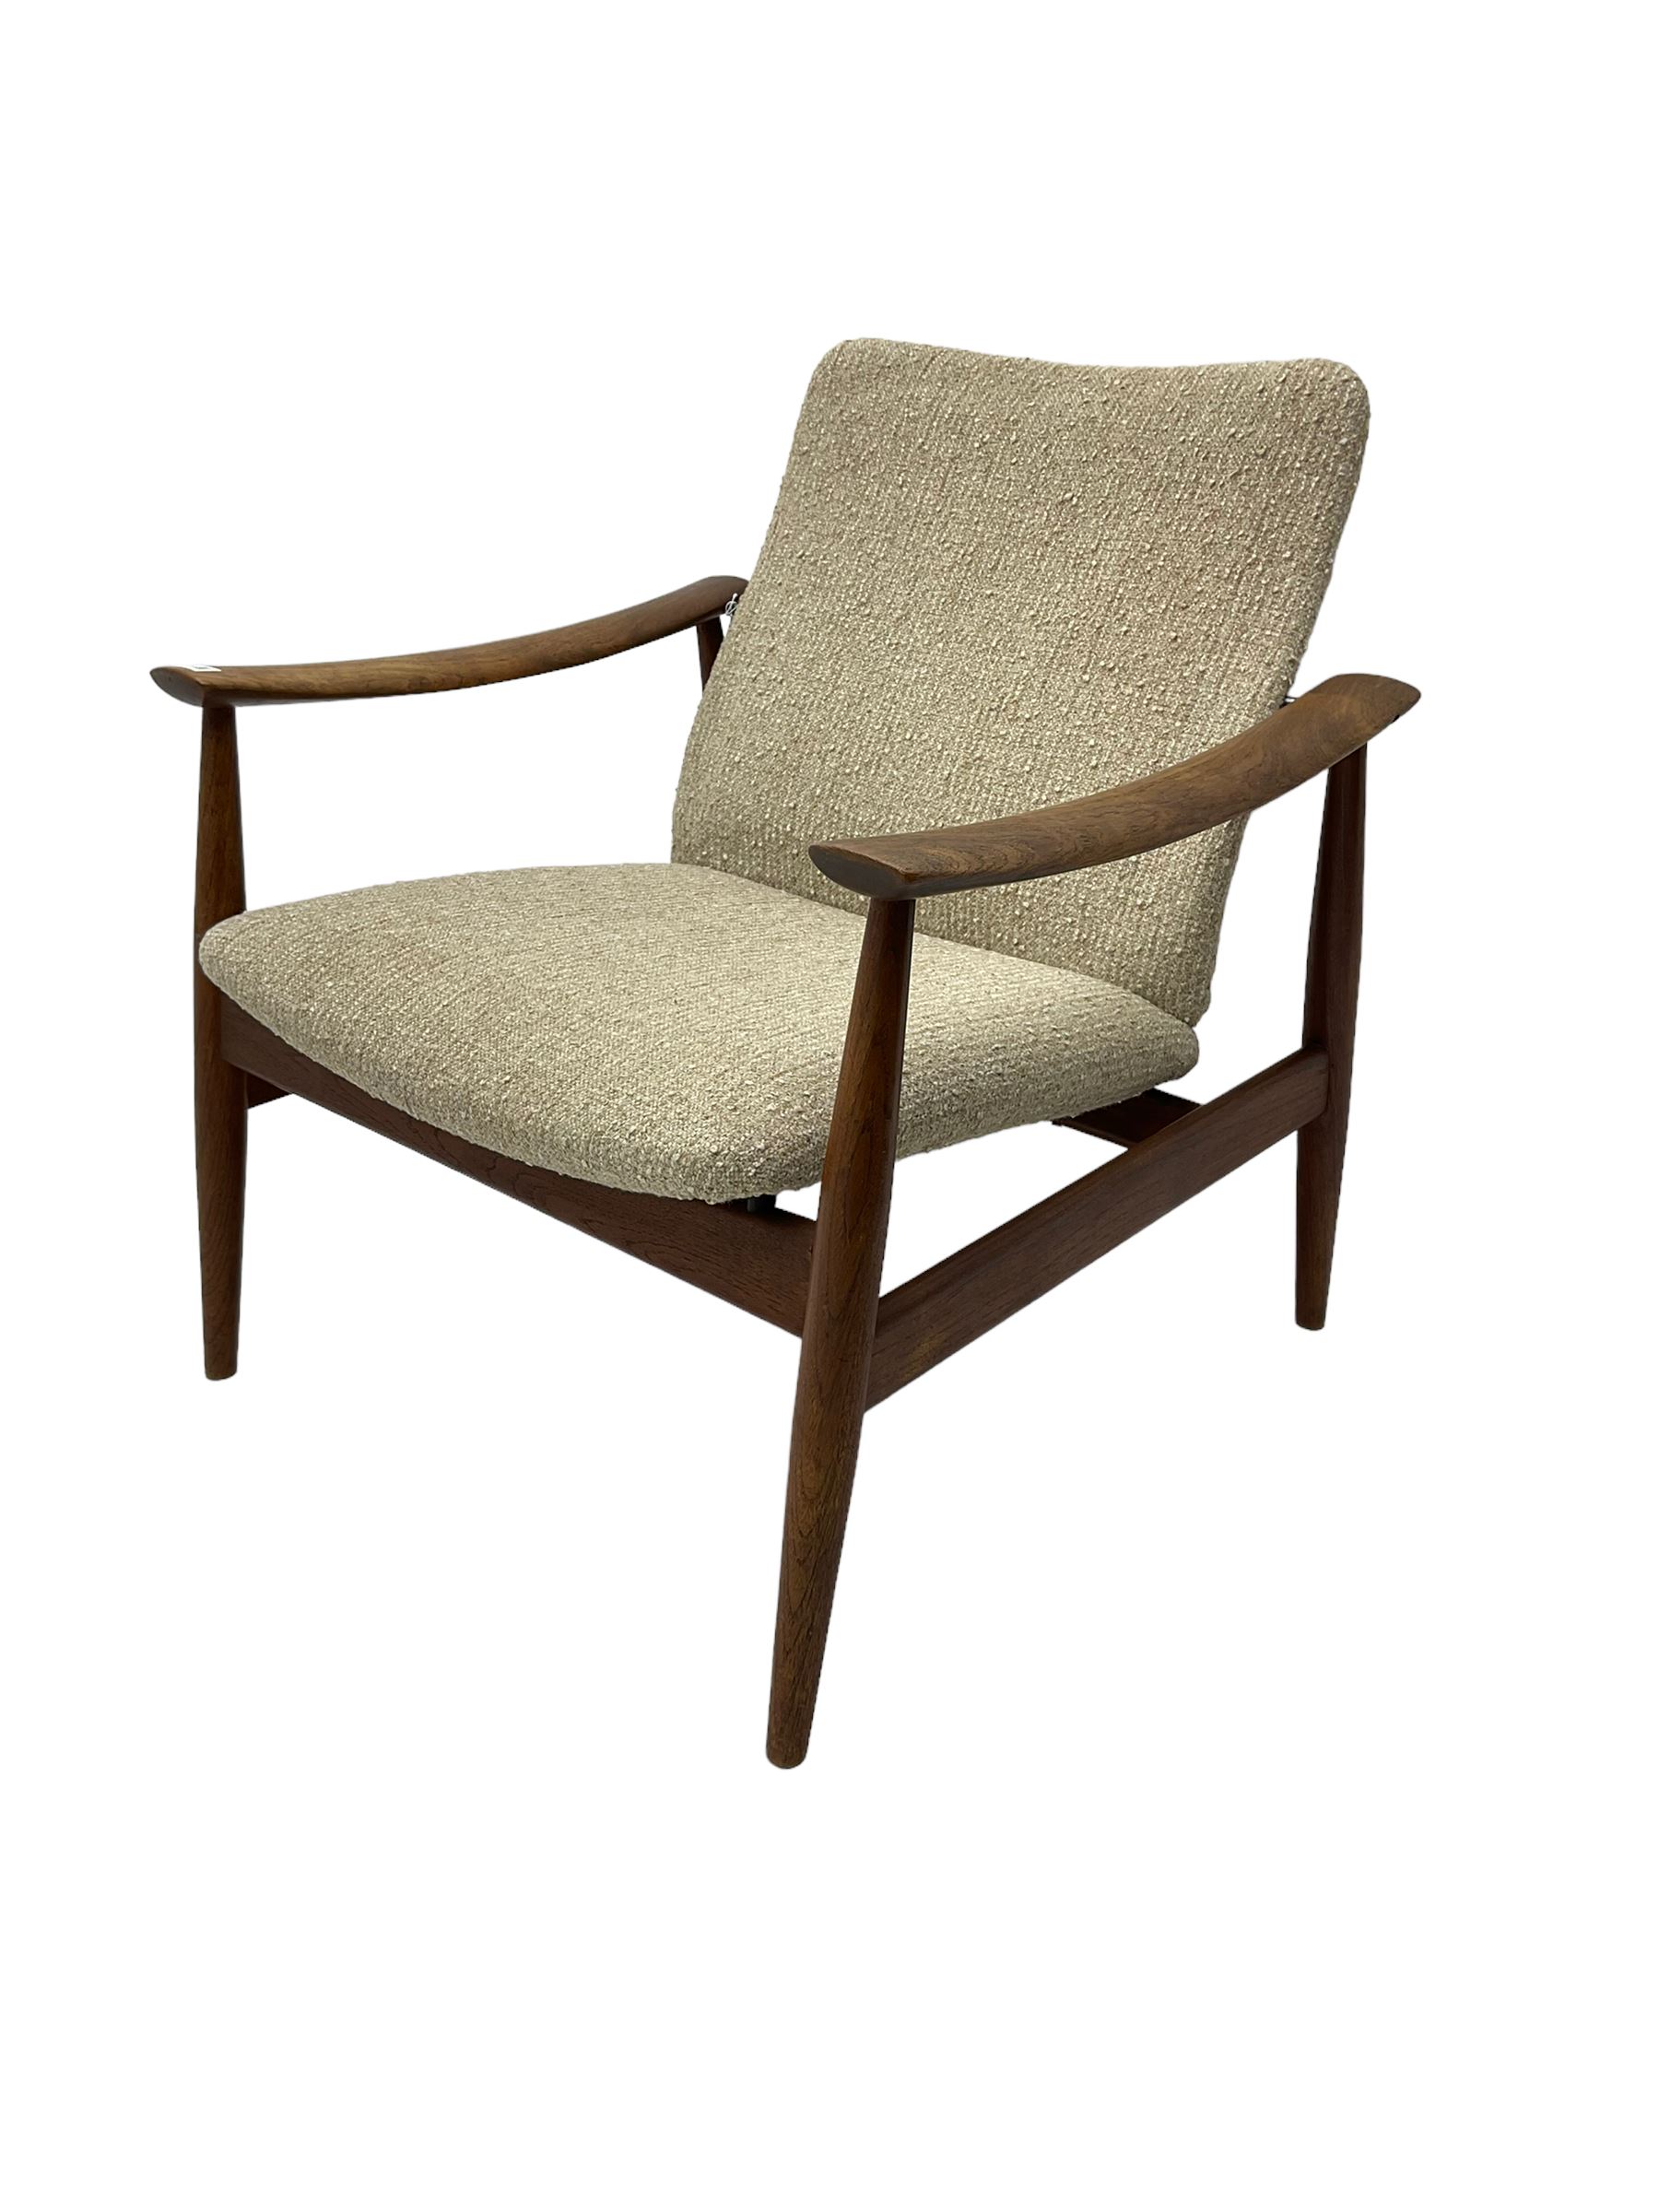 Finn Juhl for France & Son - 'model 138' mid-20th century teak easy chair upholstered in beige fabri - Image 9 of 14